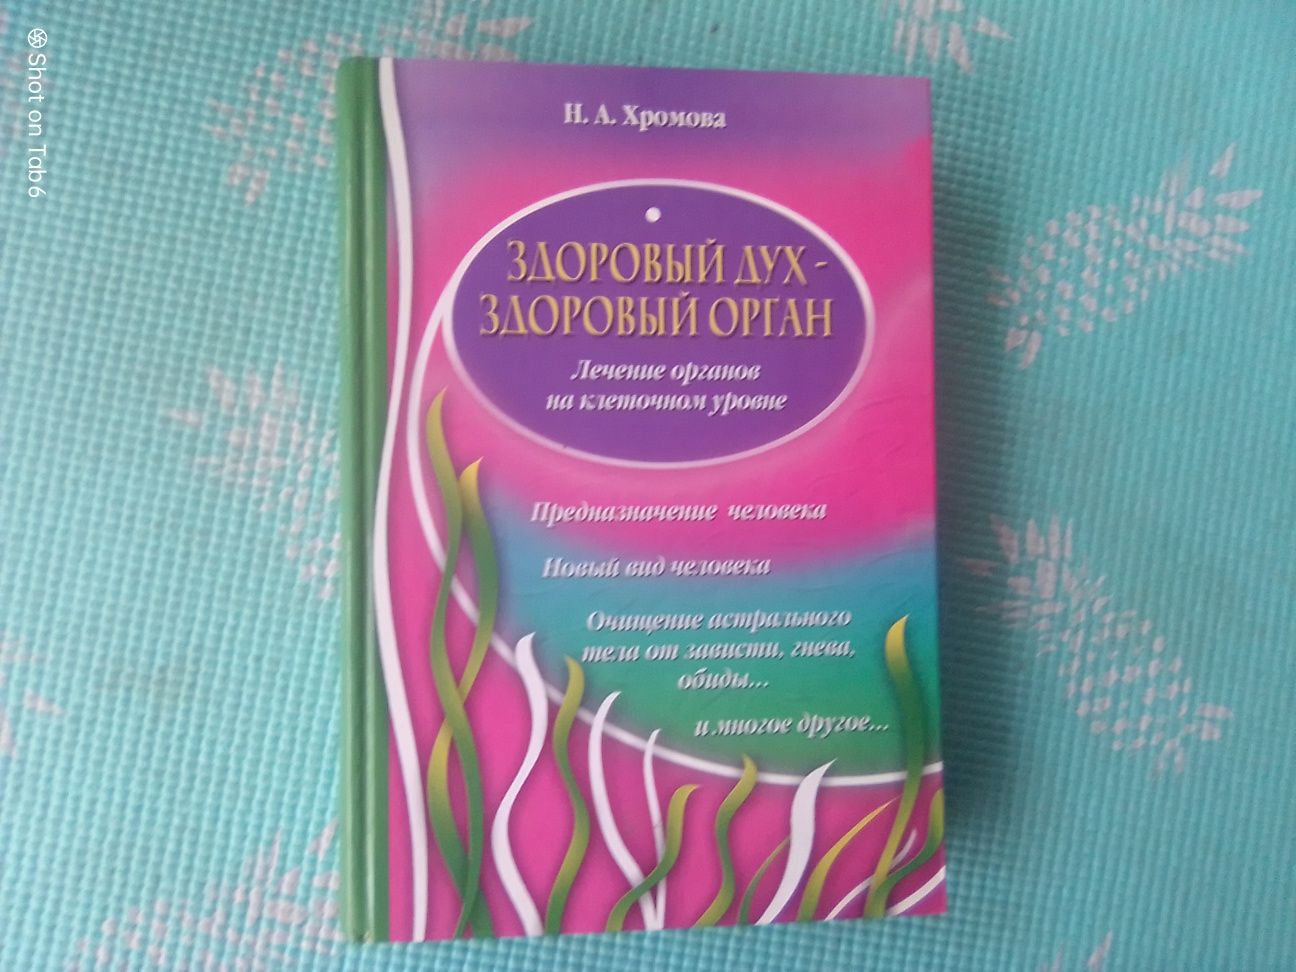 Книга Здоровый дух- здоровый орган.Хромова Н.А.